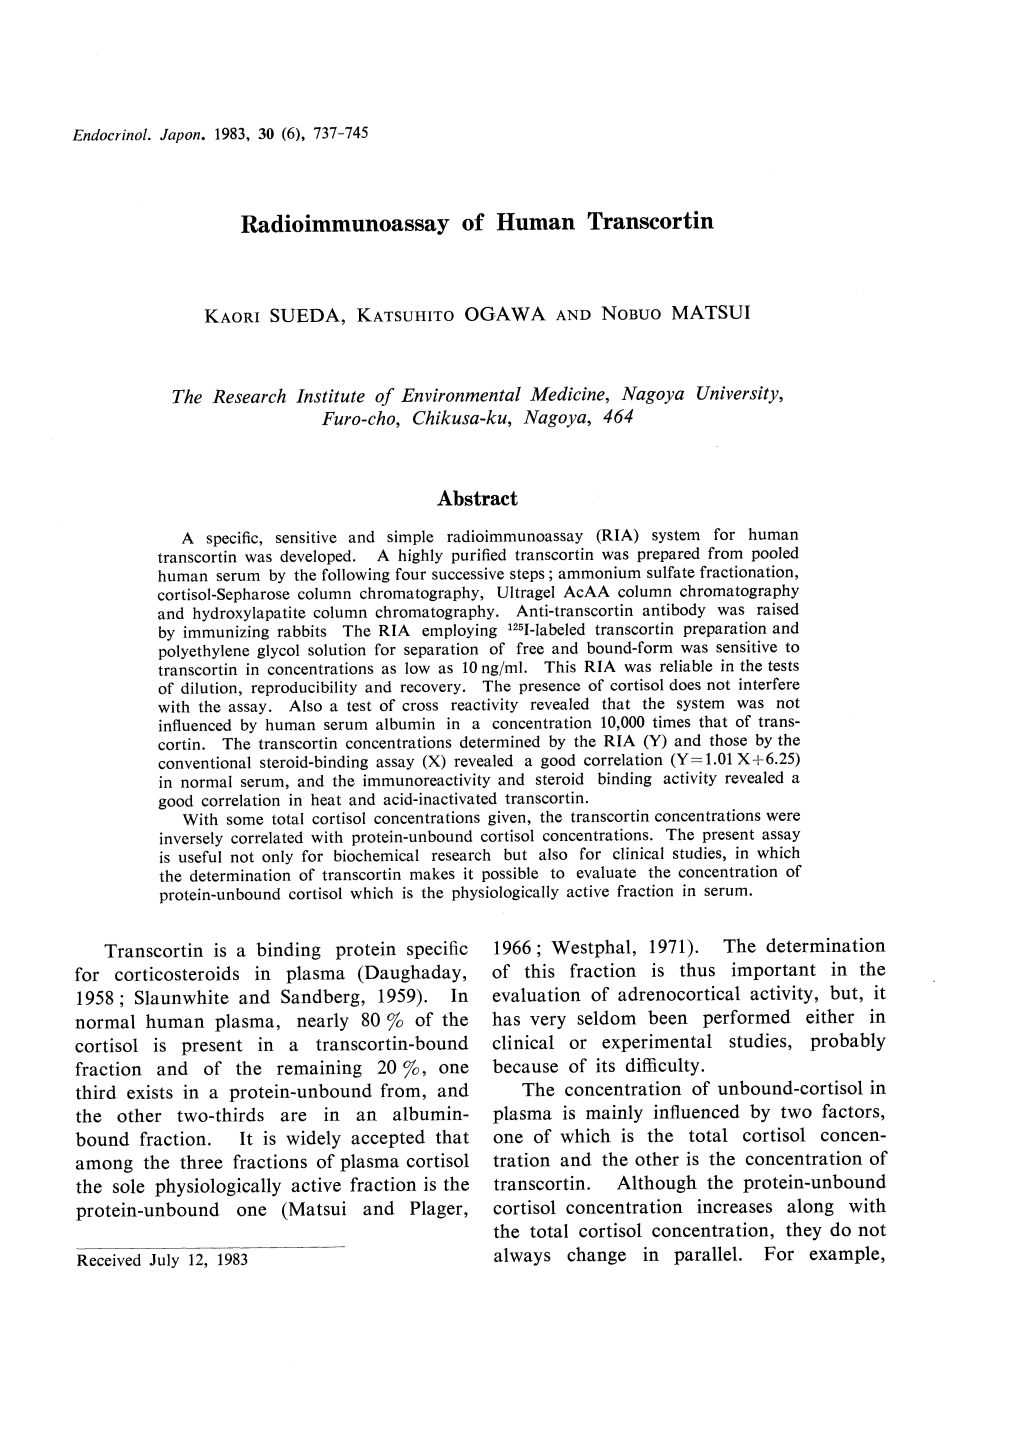 Radioimmunoassay of Human Transcortin the Research